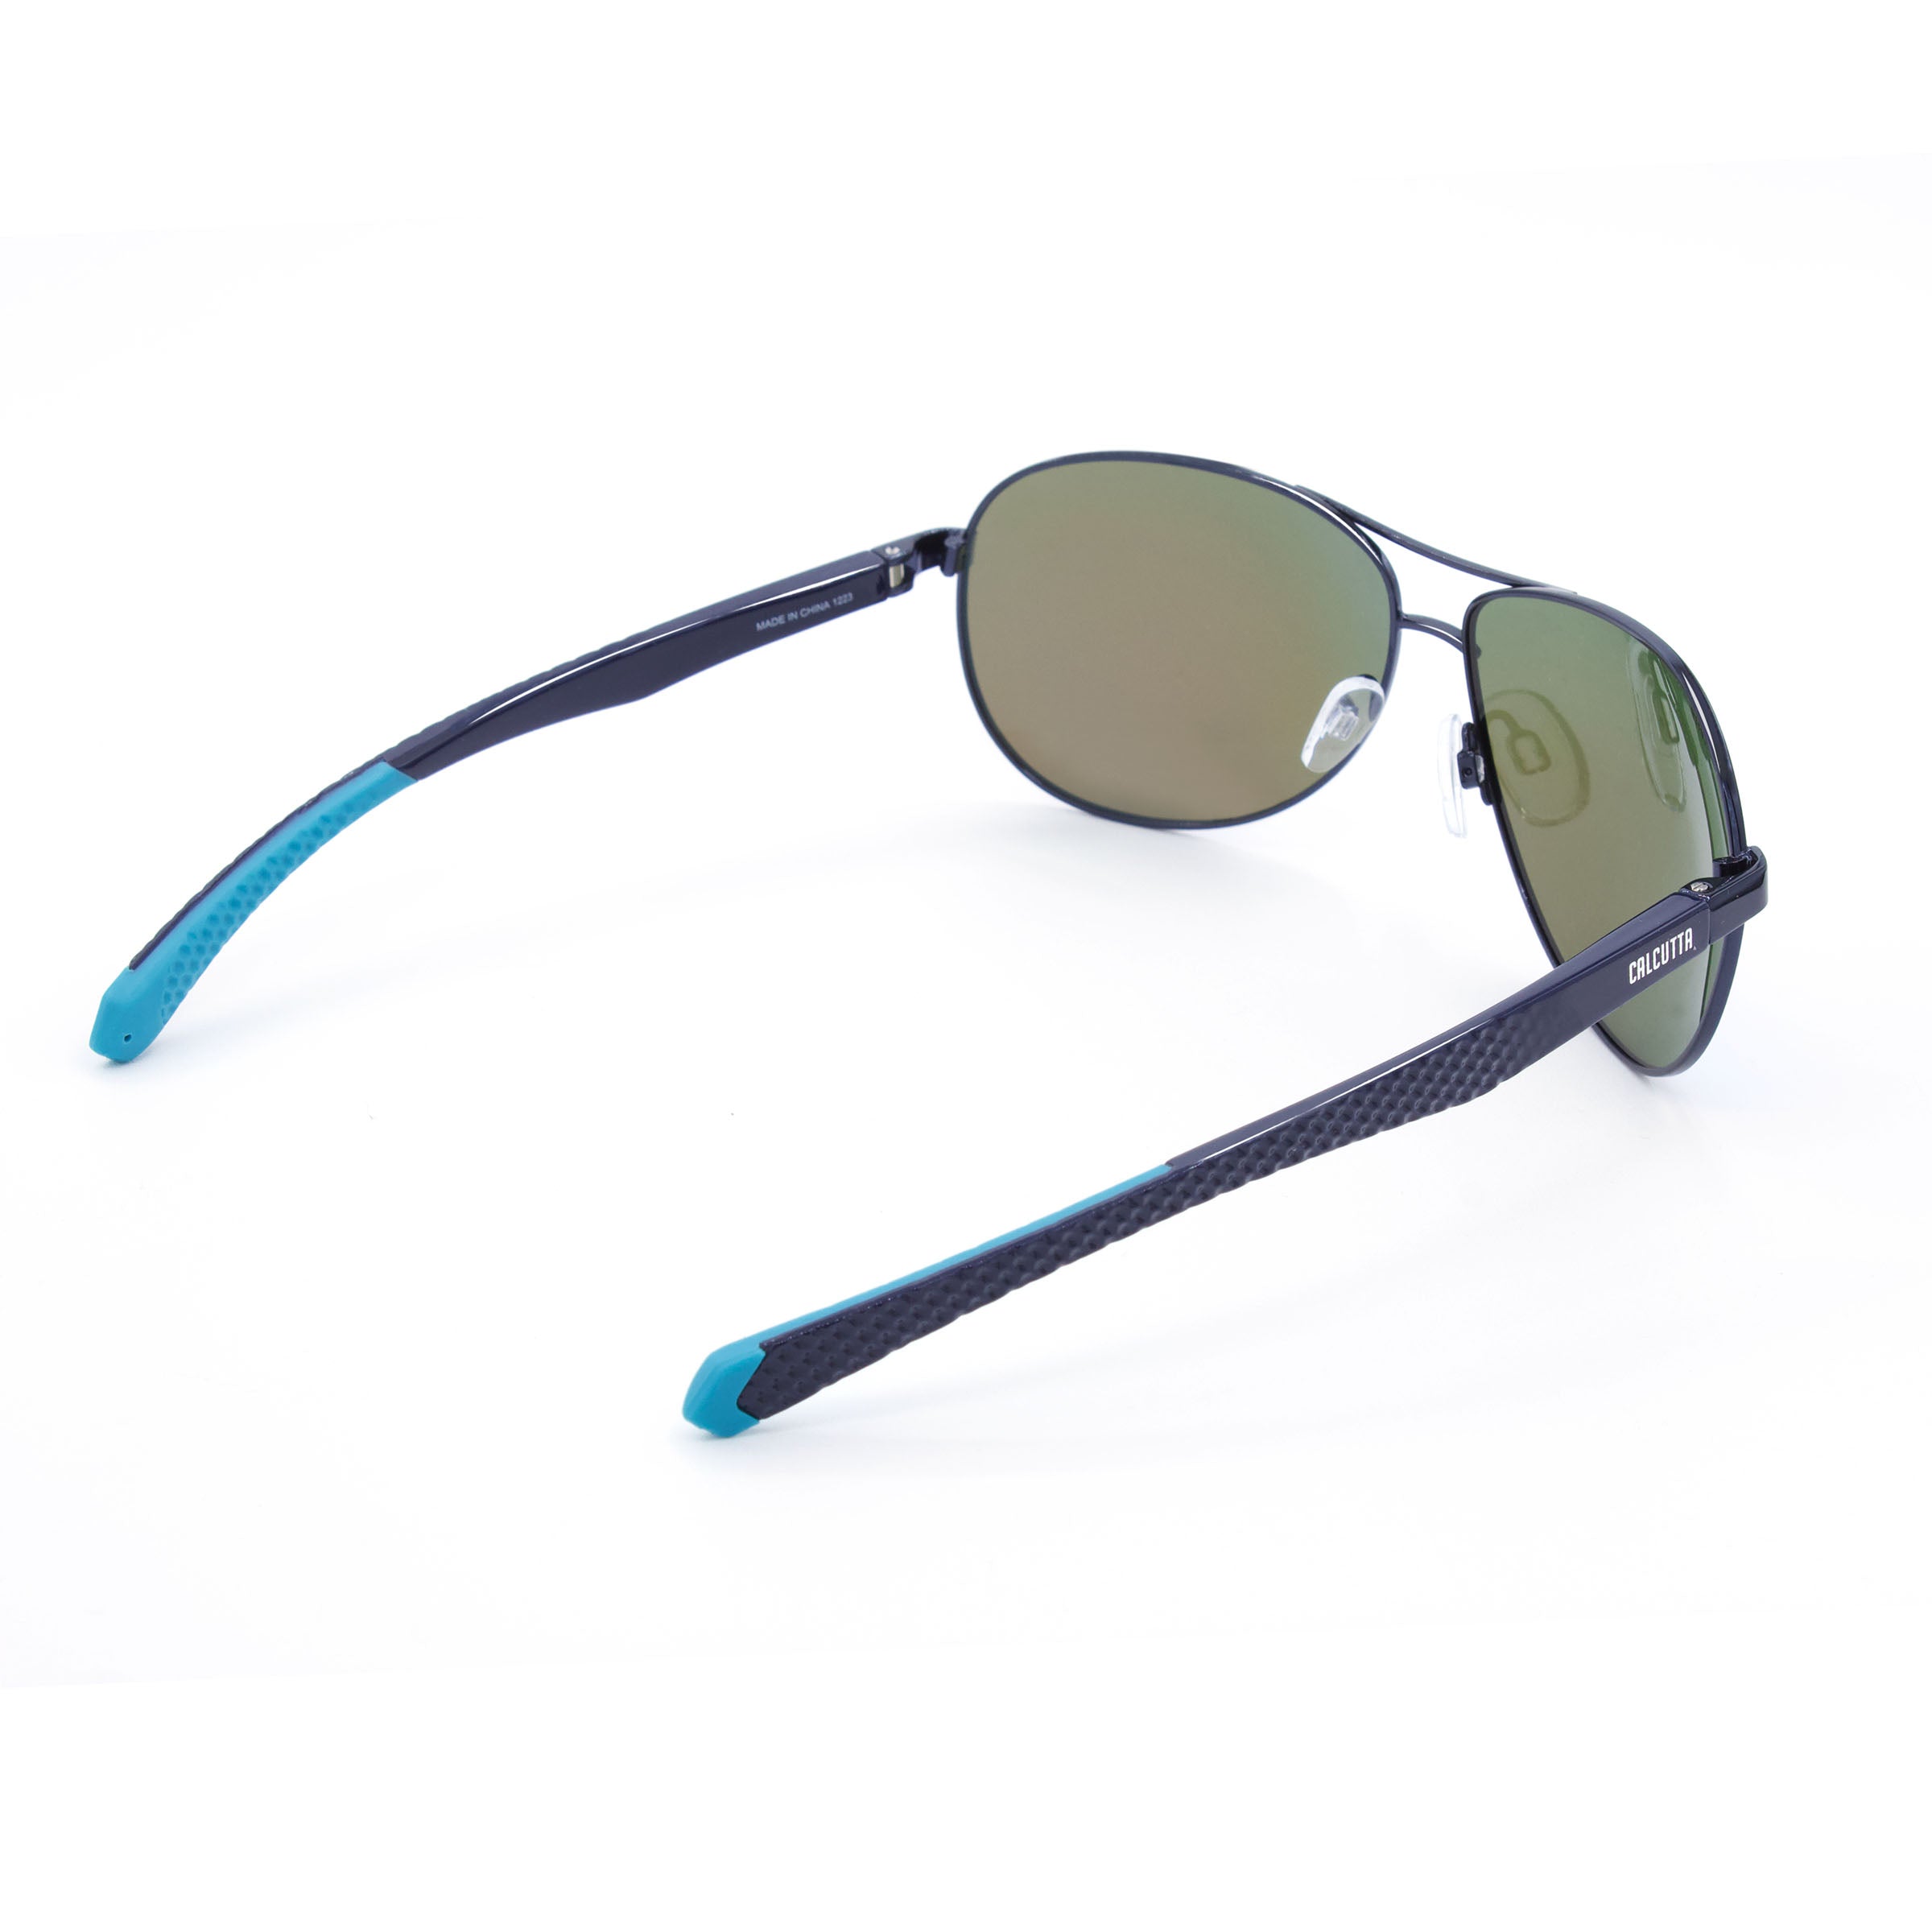 Calcutta Maverick sunglasses blue mirror arms